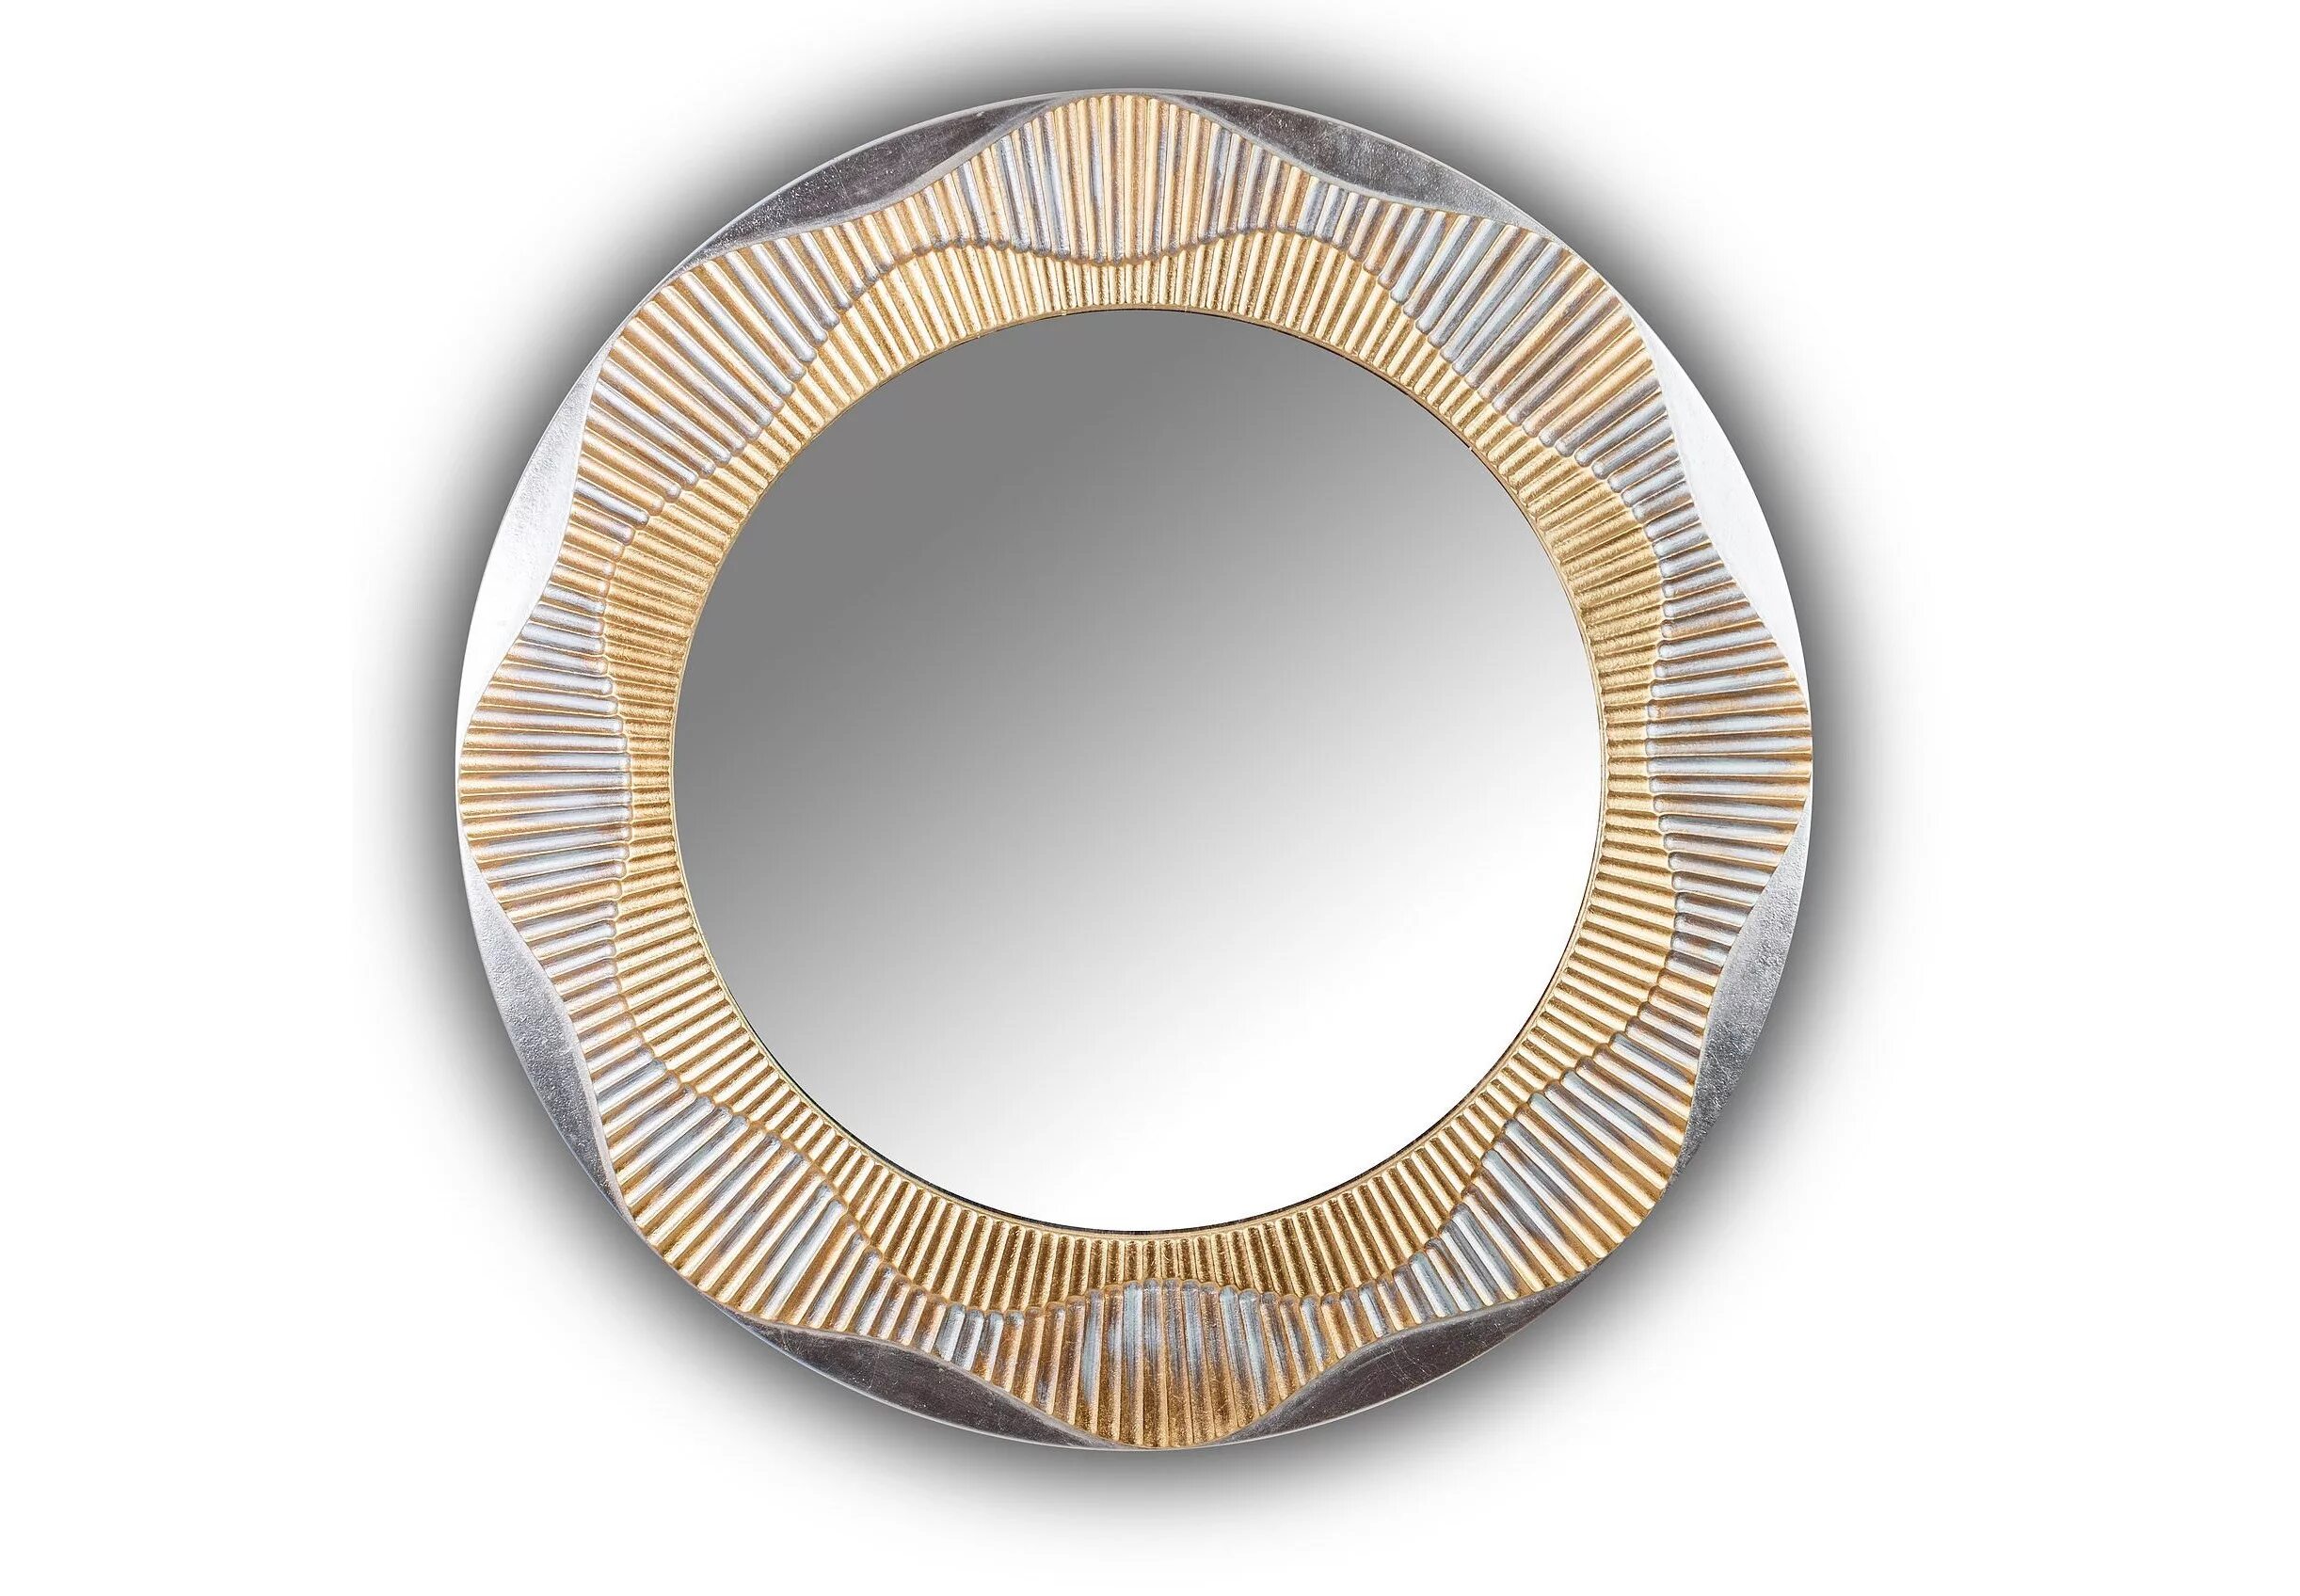 Зеркало настенное круглое 90 см античное серебро Kimberly Silver. Зеркало Сишелл. Восьмиугольное зеркало в золотой раме. Зеркало круглое 90 см.